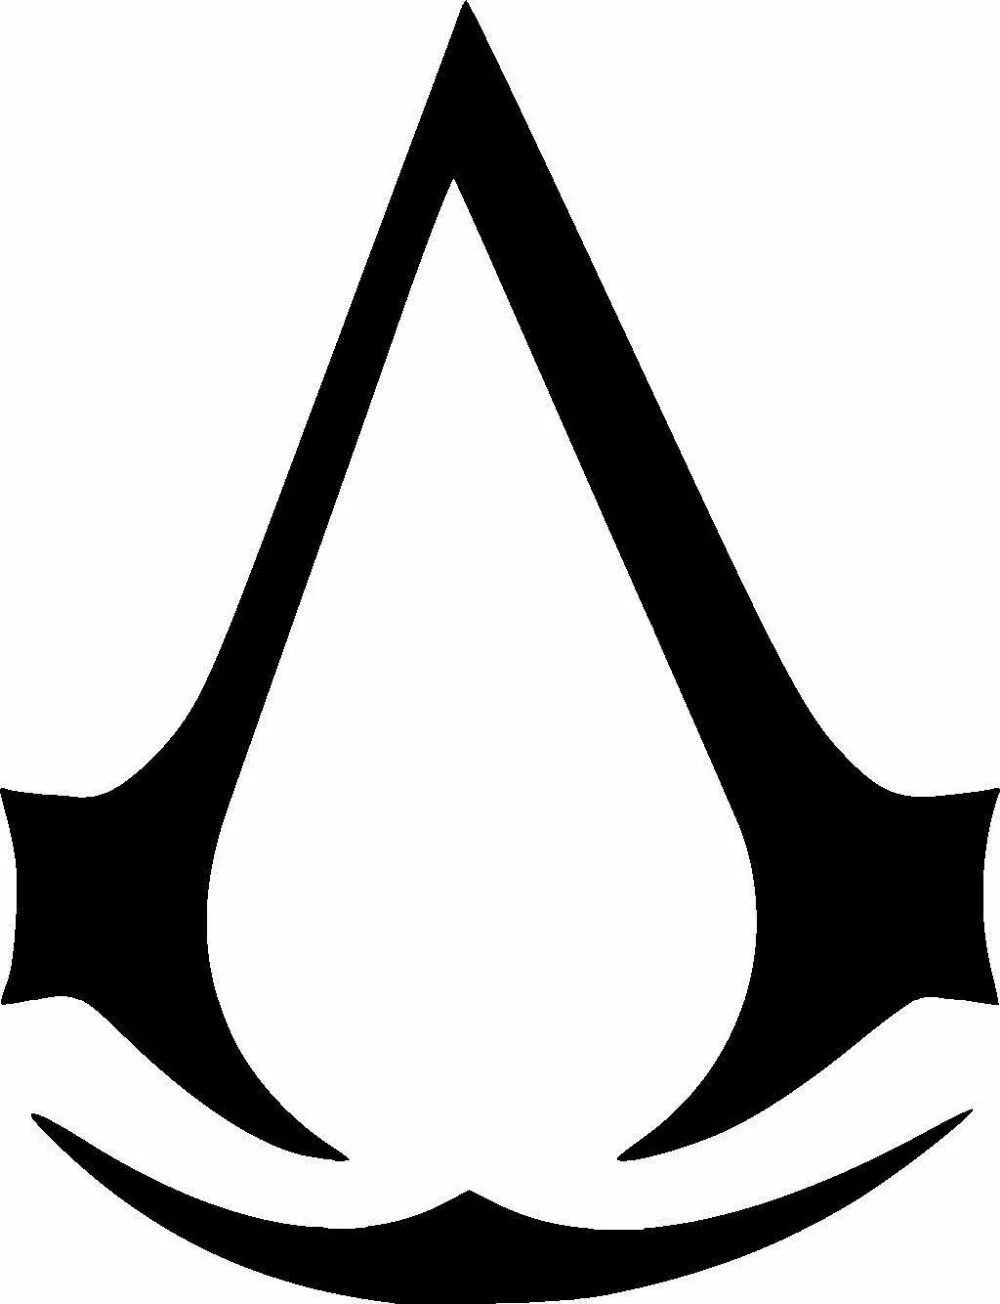 Значок ассасин крид. Ассасин Крид знак. Символ ассасинов. Значок ассасинов. Assassin's Creed логотип.